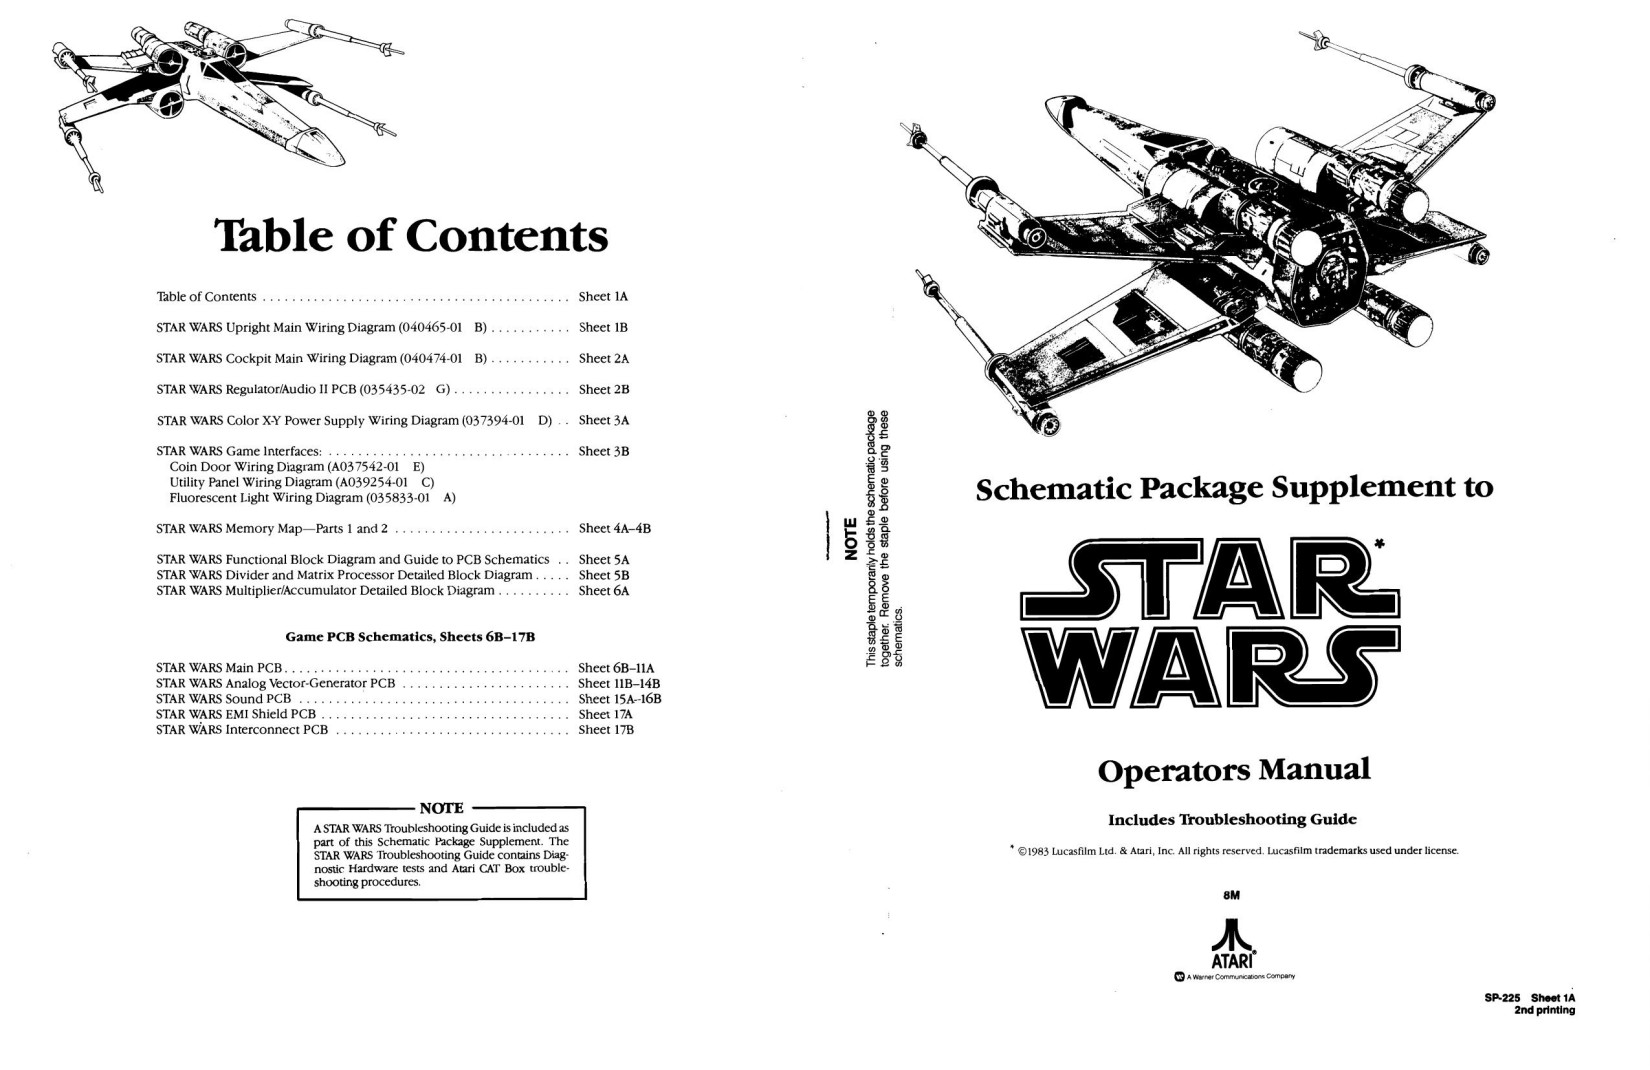 Star Wars SP-225 2nd Printing